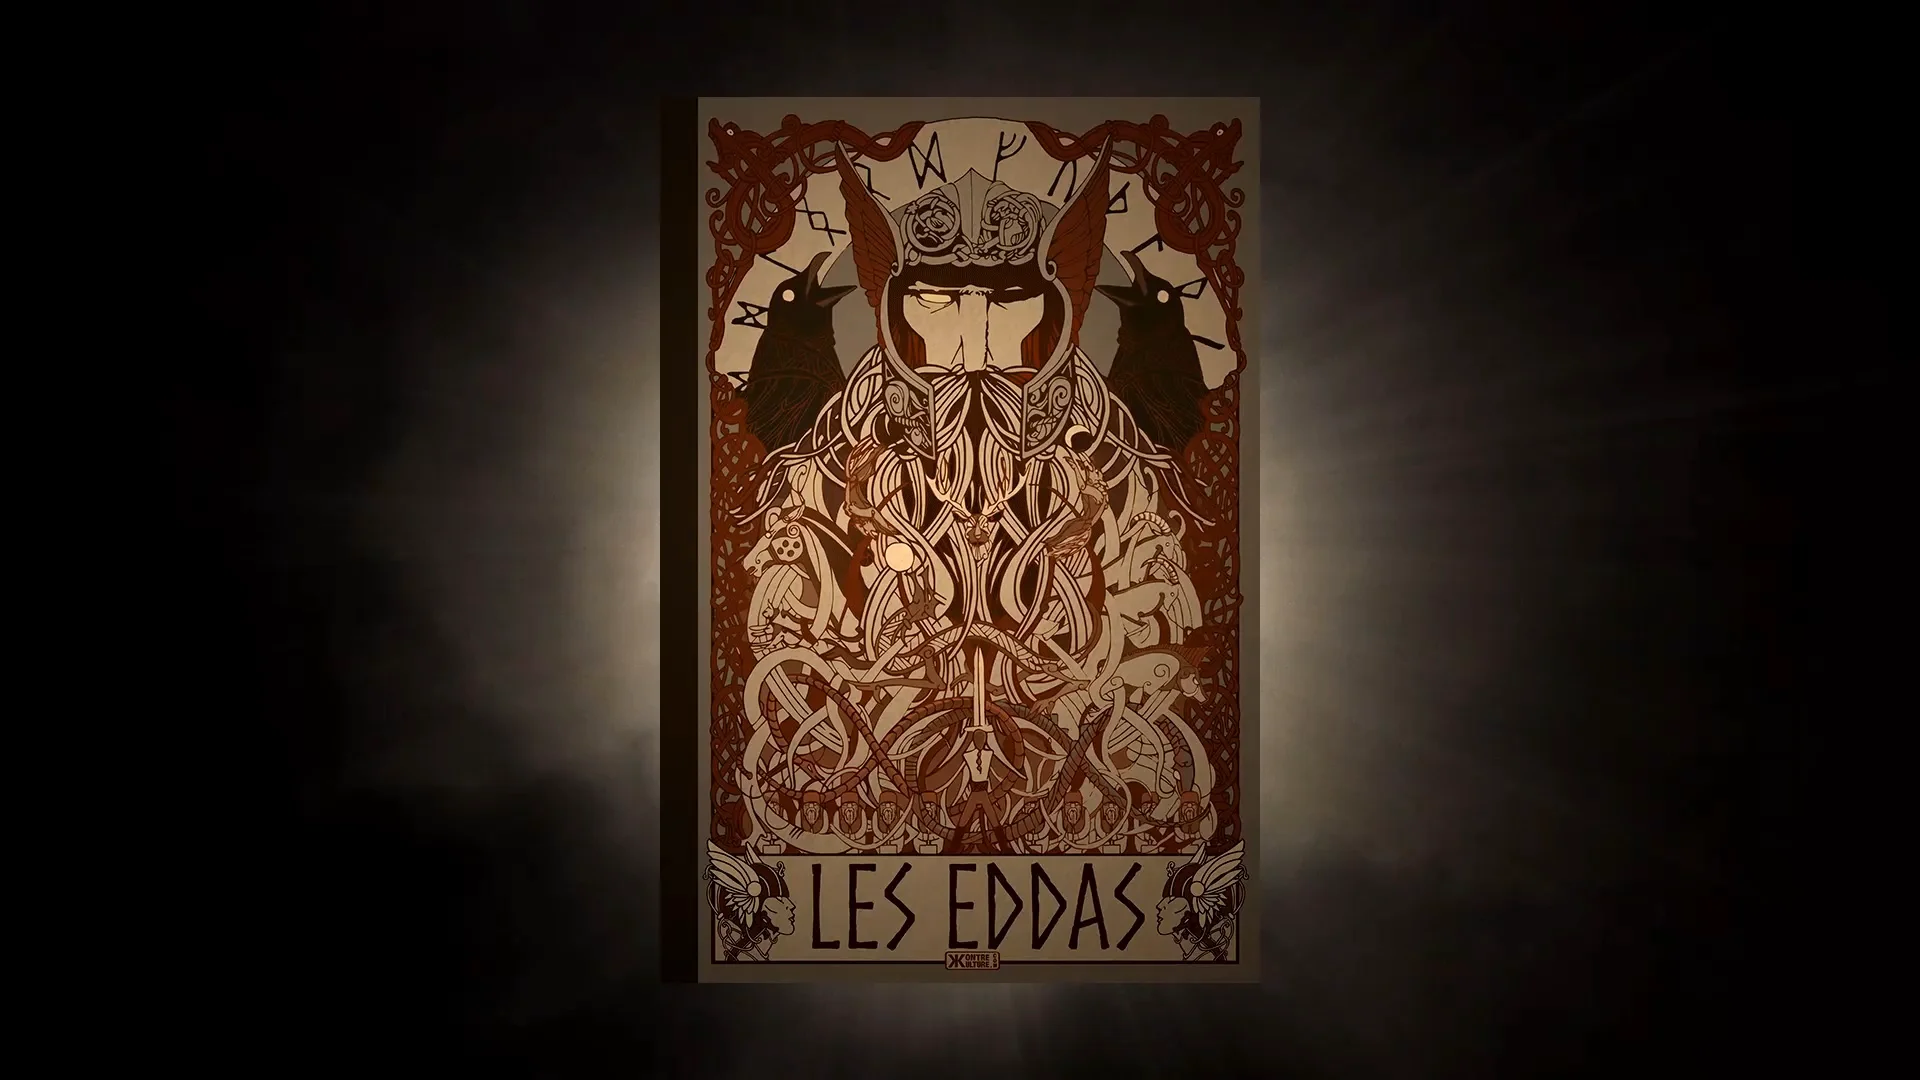 Découvrez la bande-annonce des Eddas et plongez au cœur de l’imaginaire européen